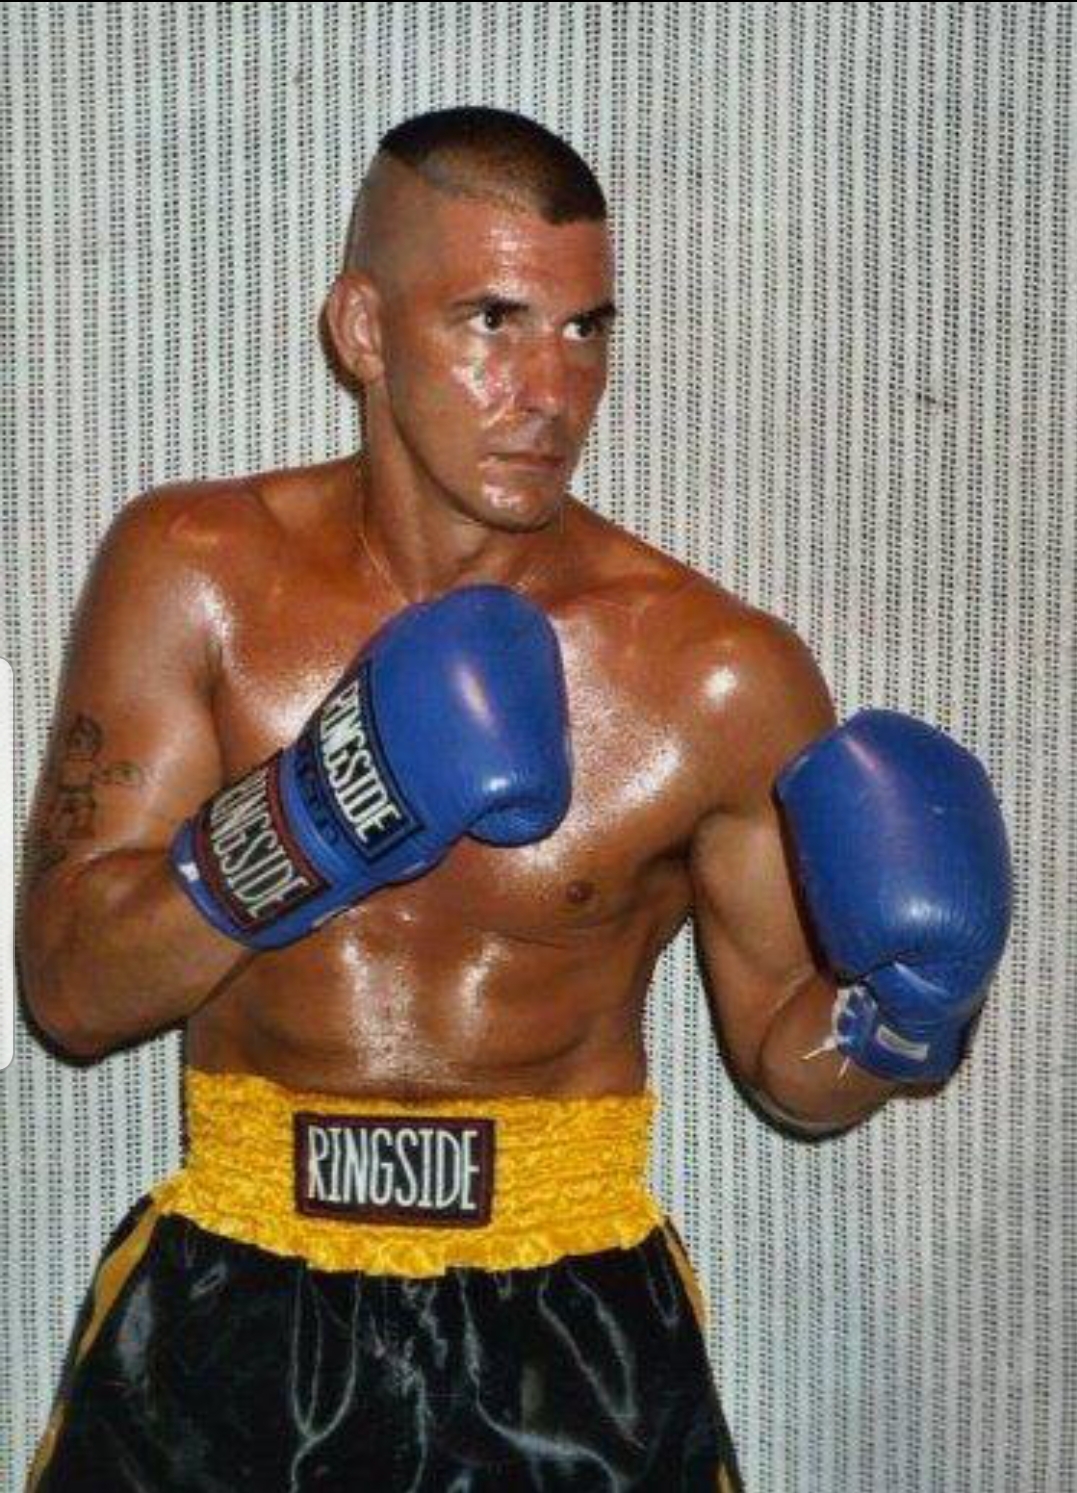 Steve Reid boxing in 2008, when he loaded up on opioids before each fight.